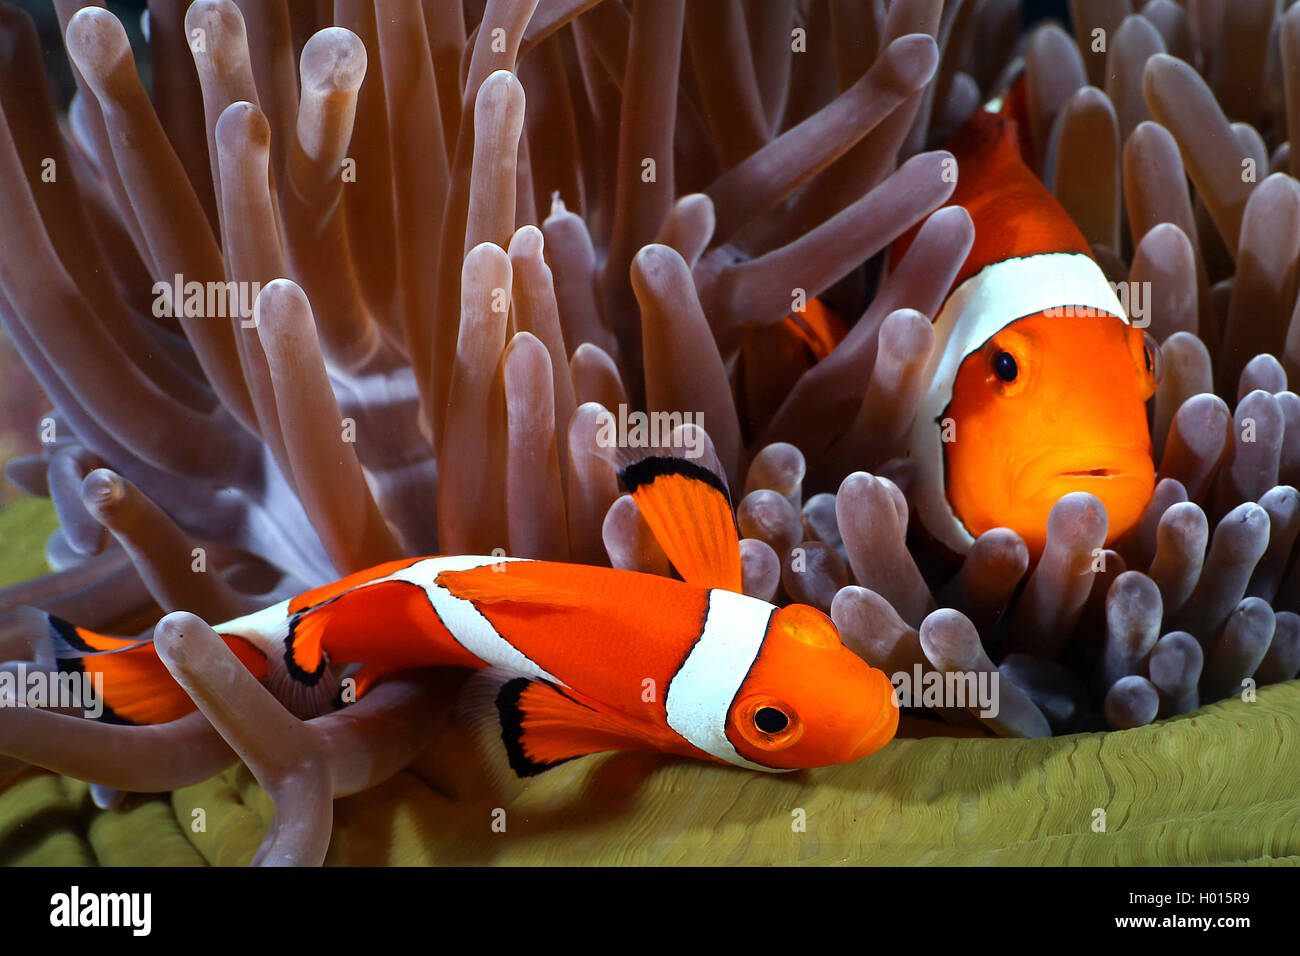 False clown Anemonenfischen, Clown anemonenfischen (Amphiprion ocellaris), zwei anemonenfischen in einem prächtigen Seeanemone, Seychellen Stockfoto